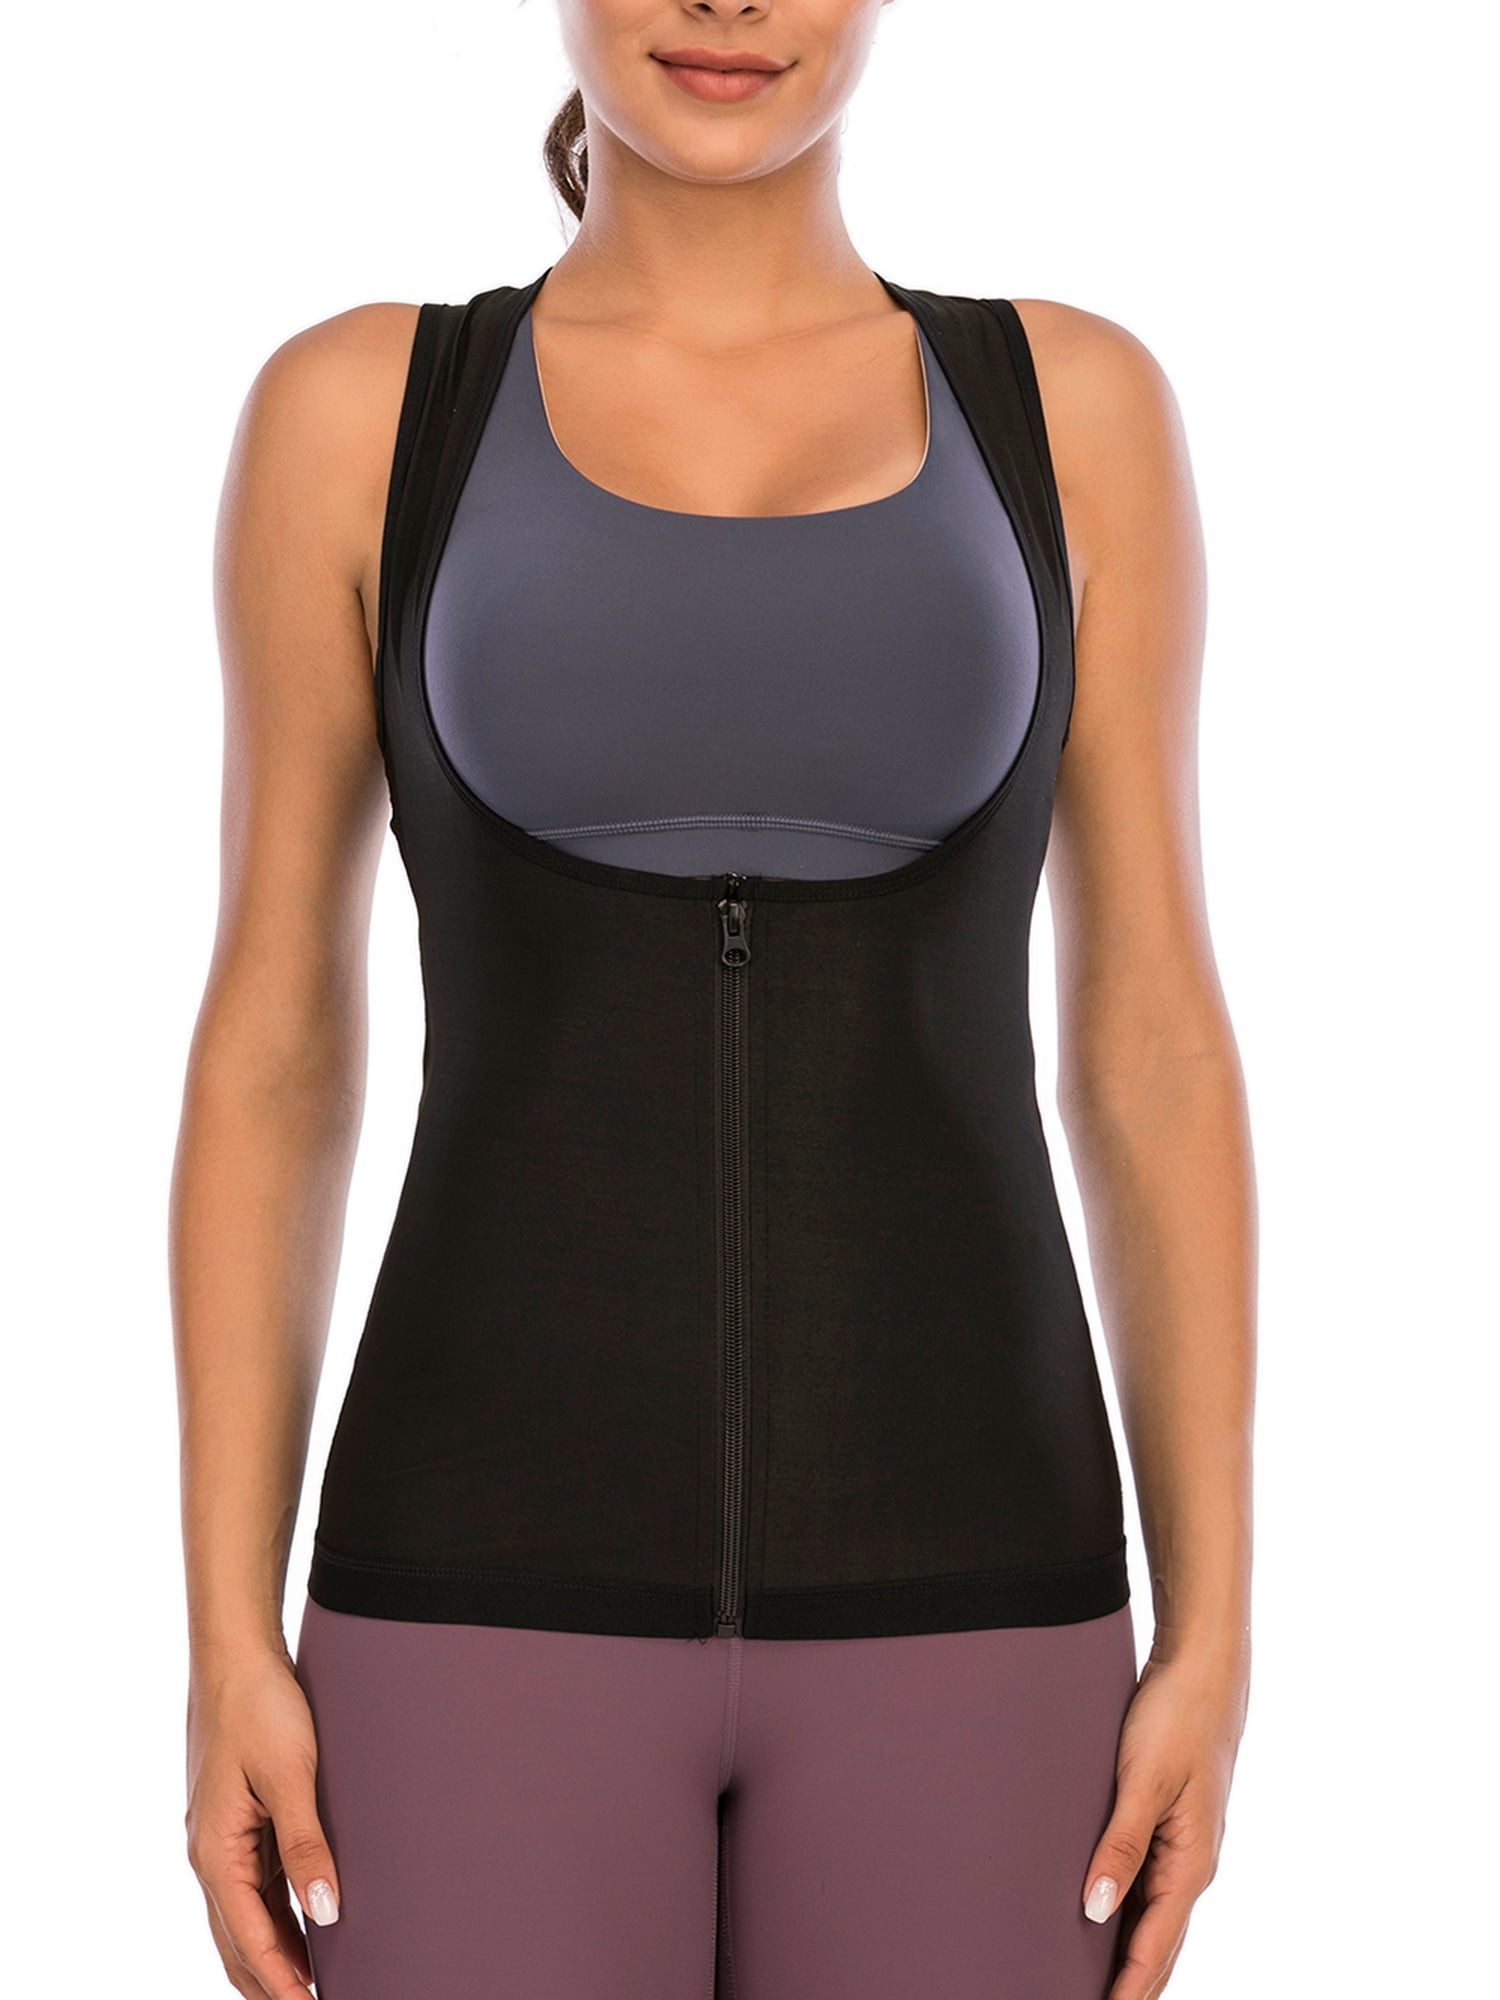 Fajas Reductoras Sweat Sauna Shapewear Vest Sports Women Cami Tank Top Underbust 